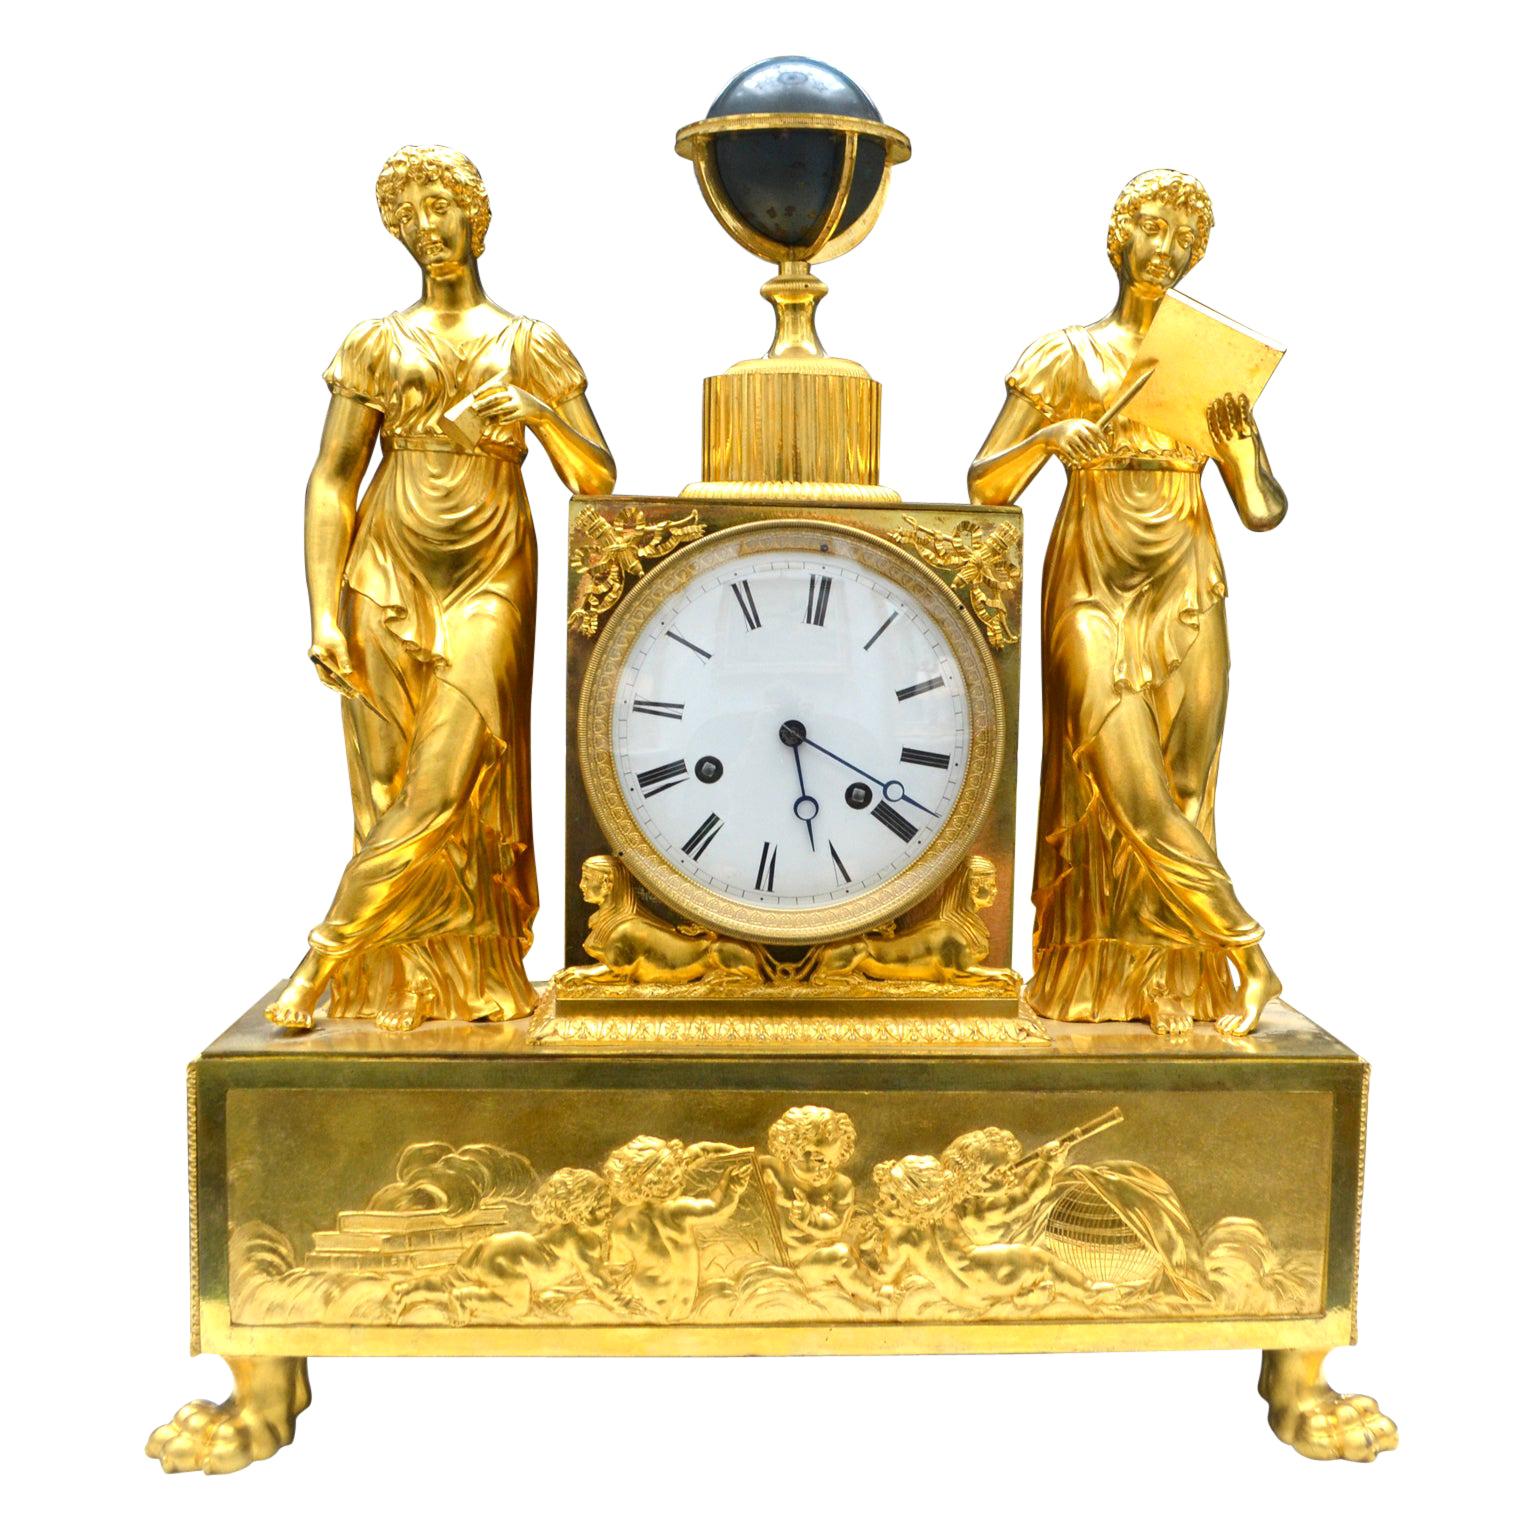  Allegorische Uhr aus vergoldeter Bronze des französischen Kaiserreichs, die die astronomischen Wissenschaften darstellt